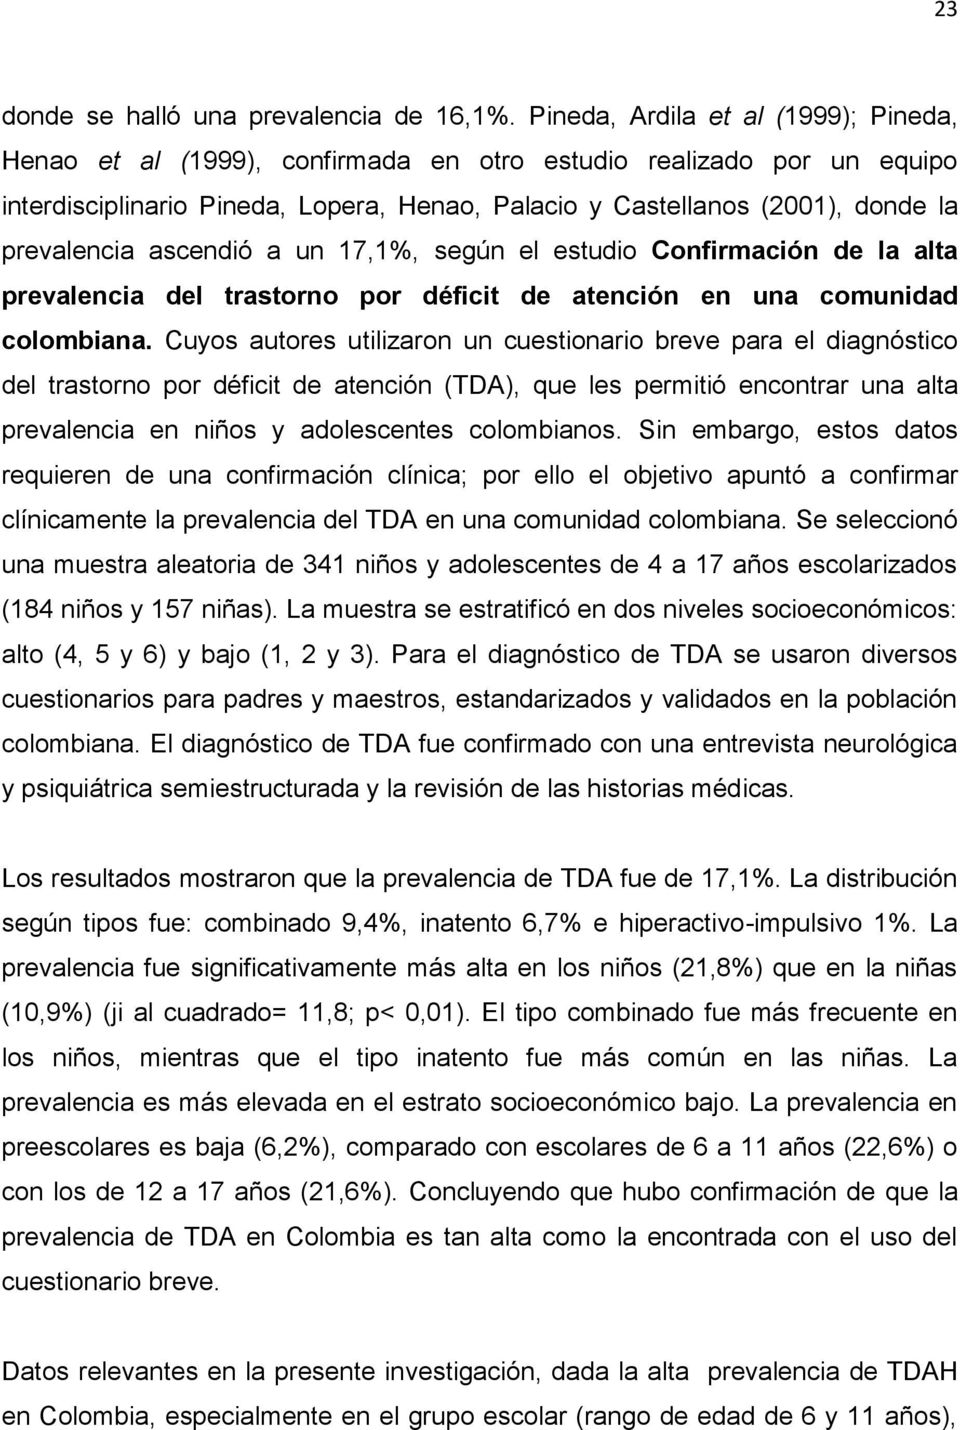 prevalencia ascendió a un 17,1%, según el estudio Confirmación de la alta prevalencia del trastorno por déficit de atención en una comunidad colombiana.